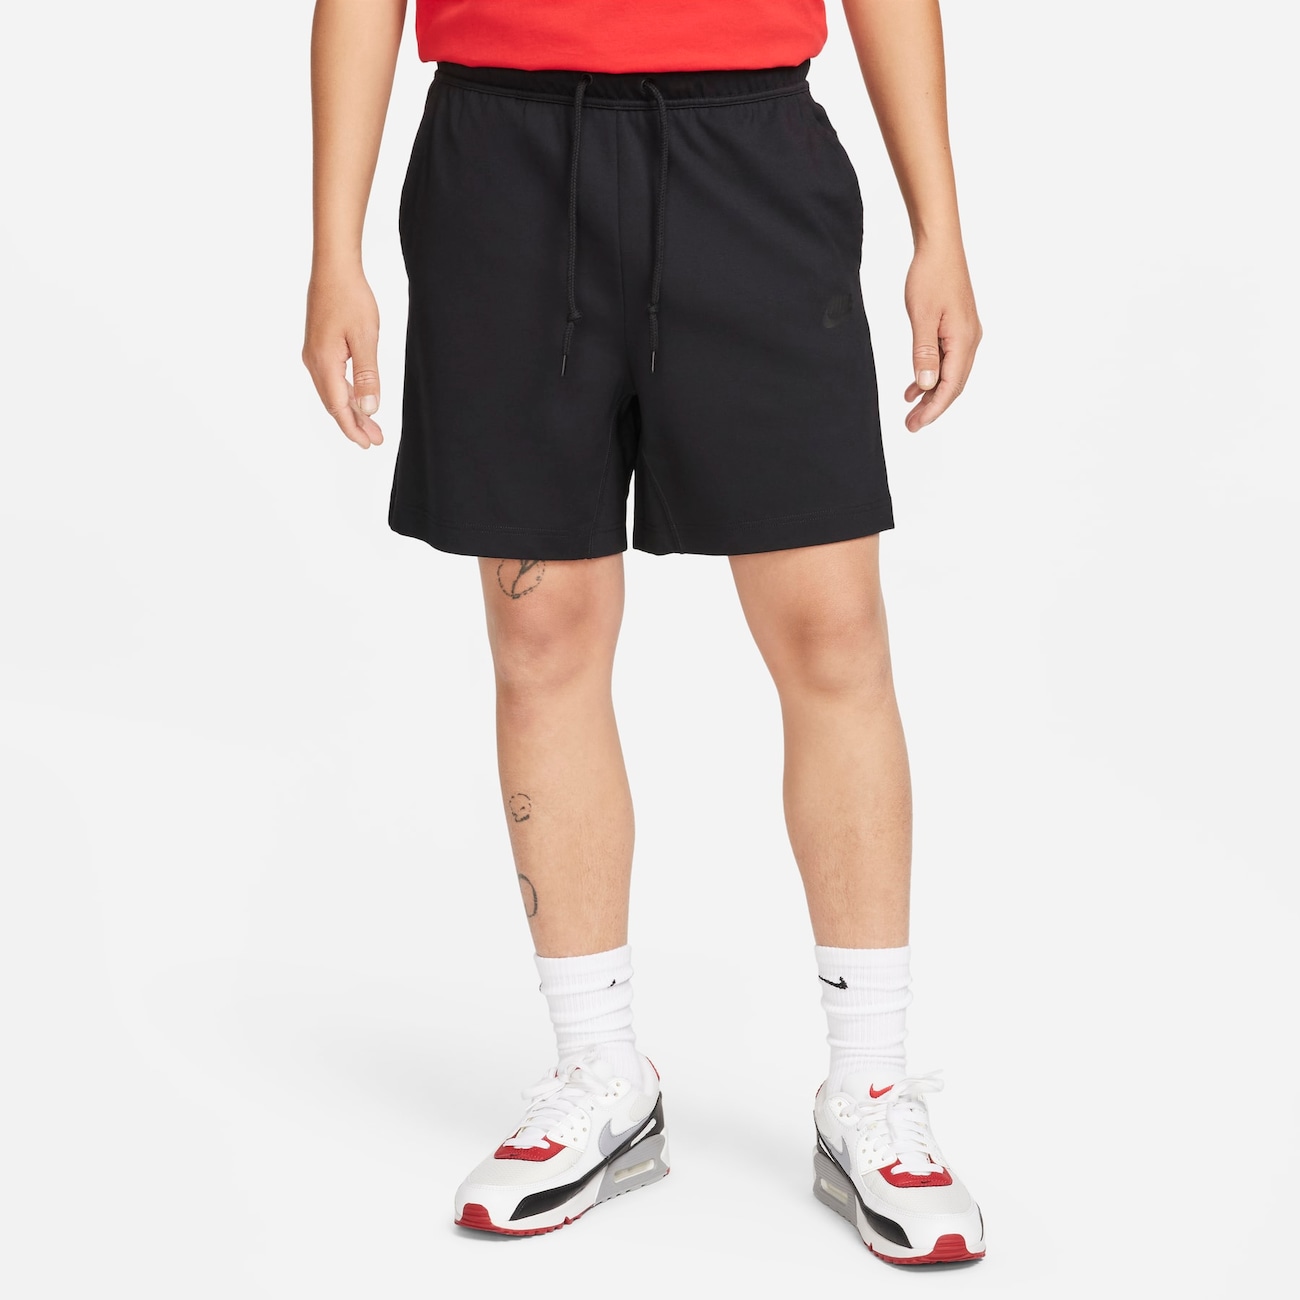 Shorts Nike Knit Masculino